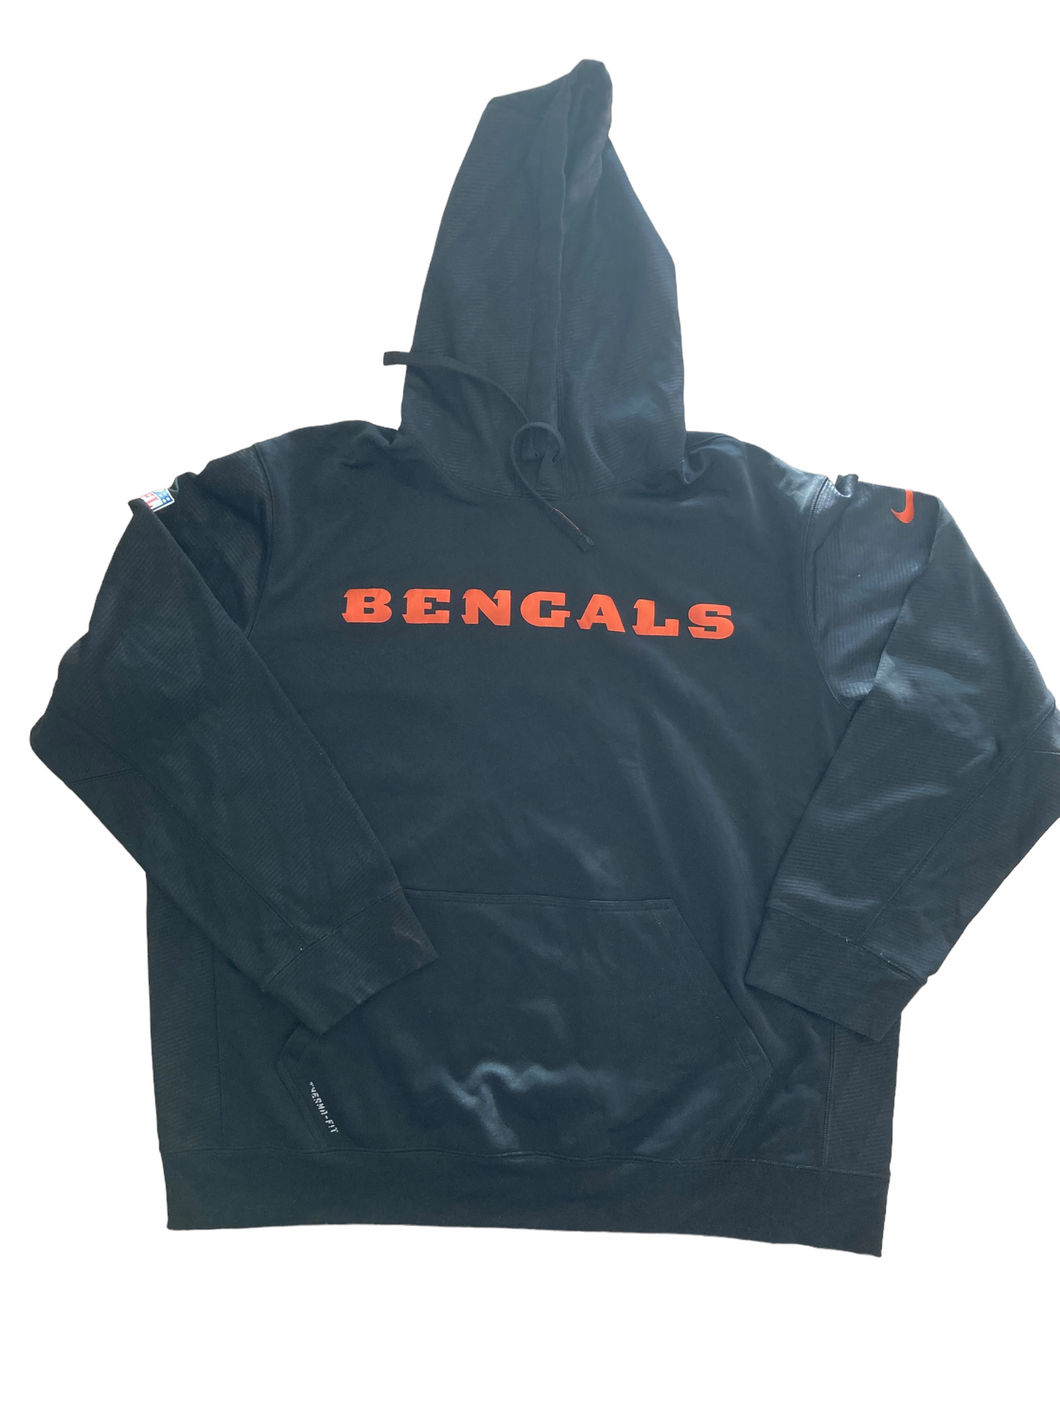 cincinnati bengals NFL hoodie